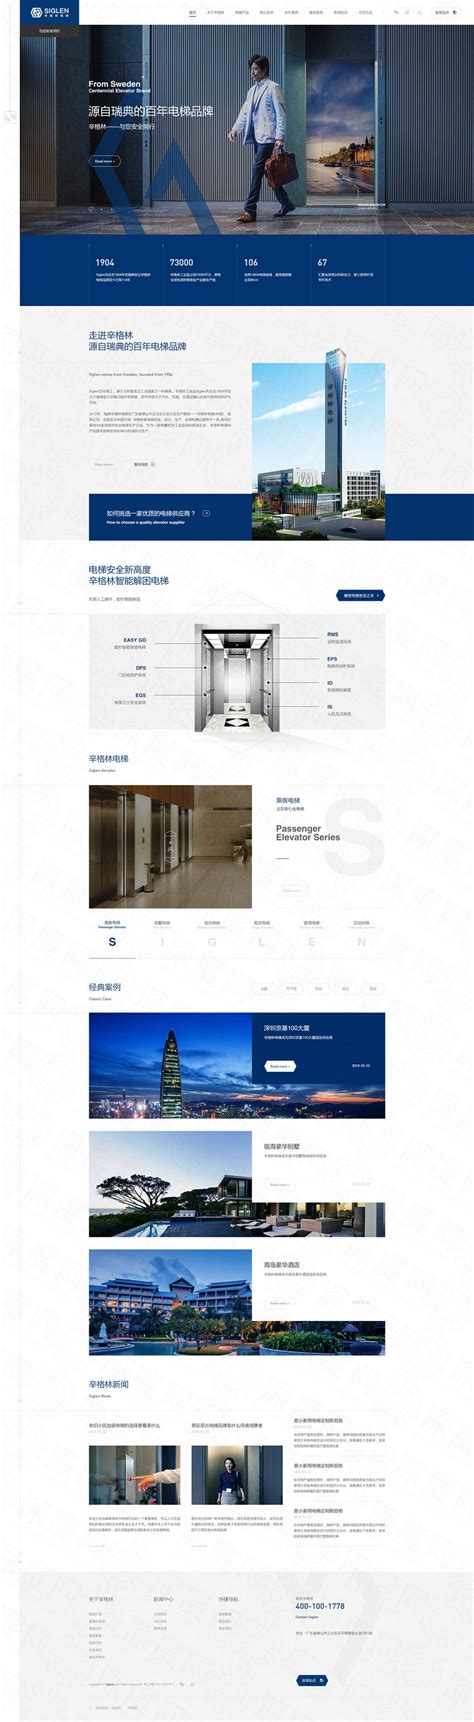 佛山辛格林电梯品牌网站建设案例-深度网